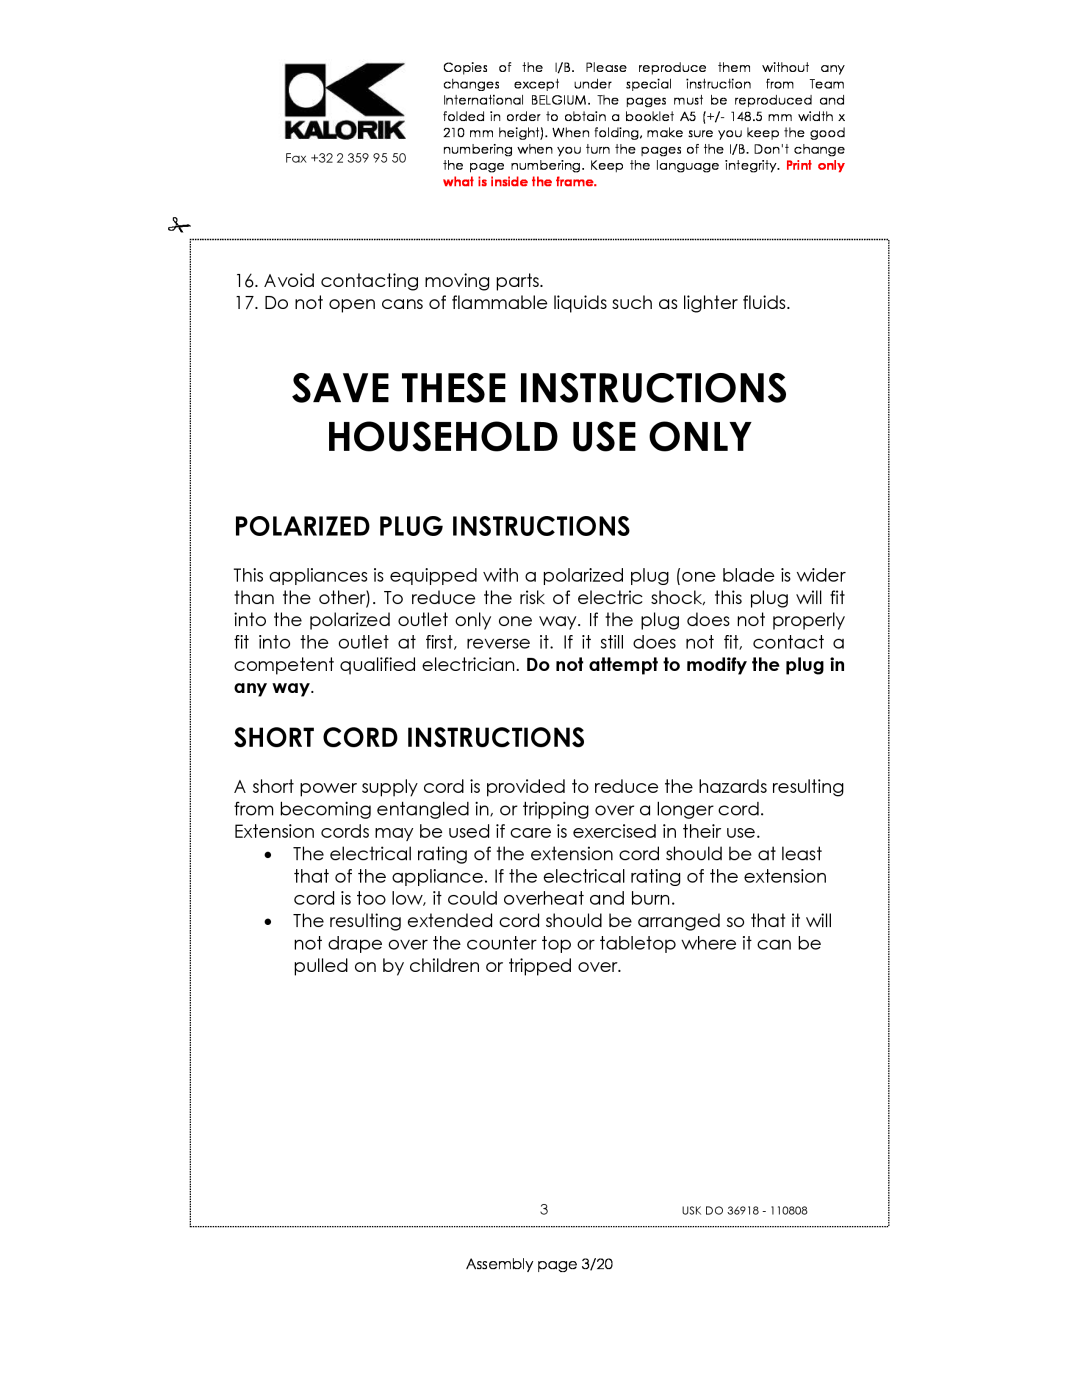 Kalorik USK DO 36918 Save These Instructions Household Use Only, Polarized Plug Instructions, Short Cord Instructions 